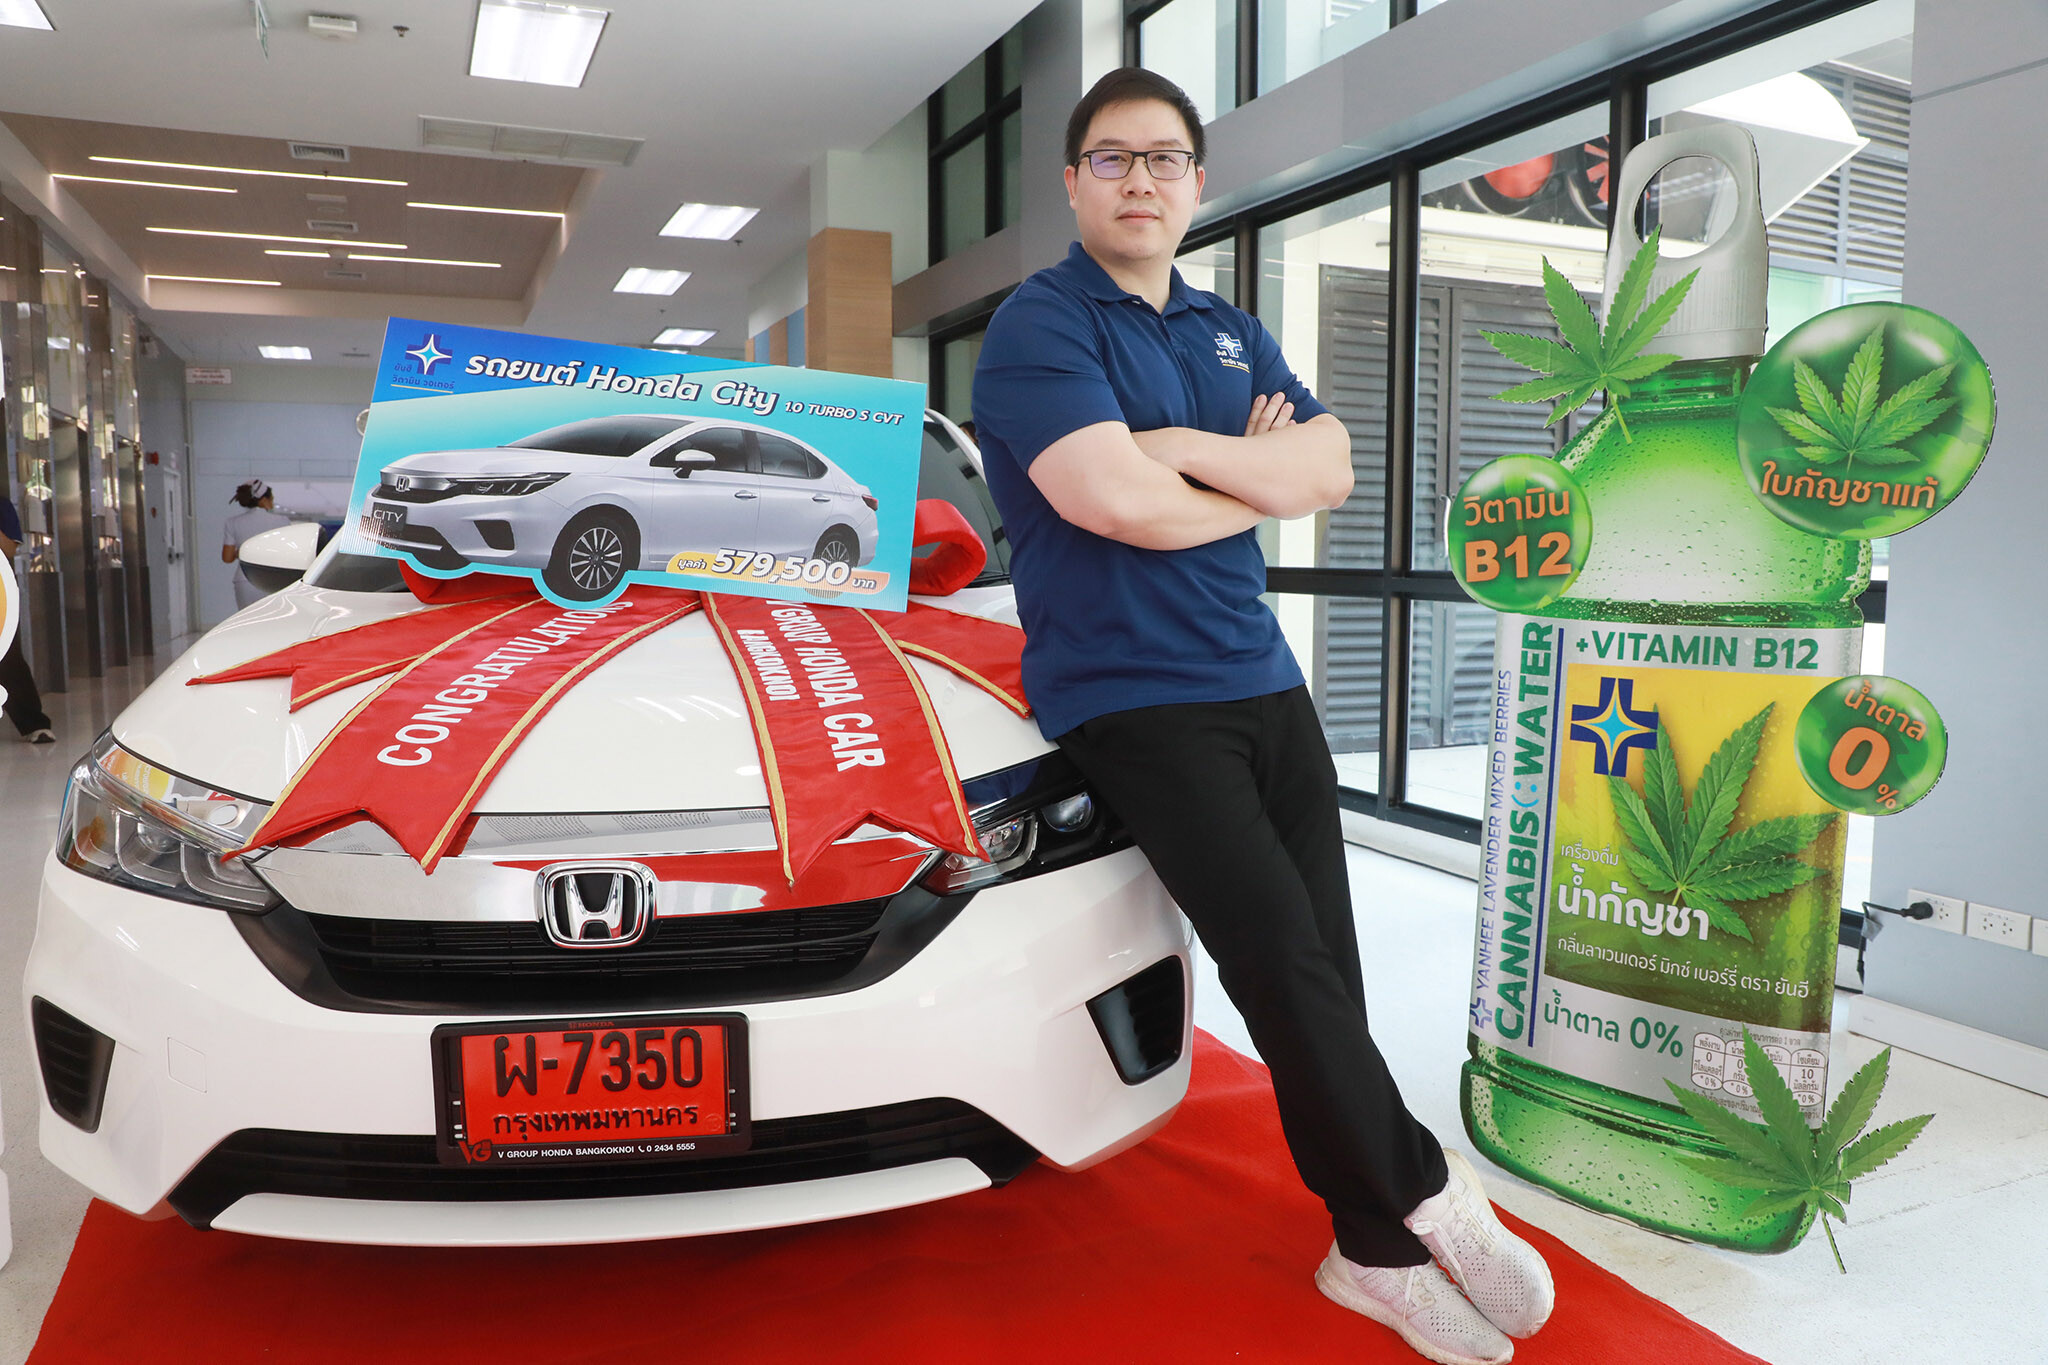 ประกาศผล "ยันฮี วิตามิน วอเตอร์ แจกหนัก จัดเต็มทั่วไทย" แจกรถยนต์ Honda City พร้อมโชคใหญ่กว่า 3,000,000 บาท